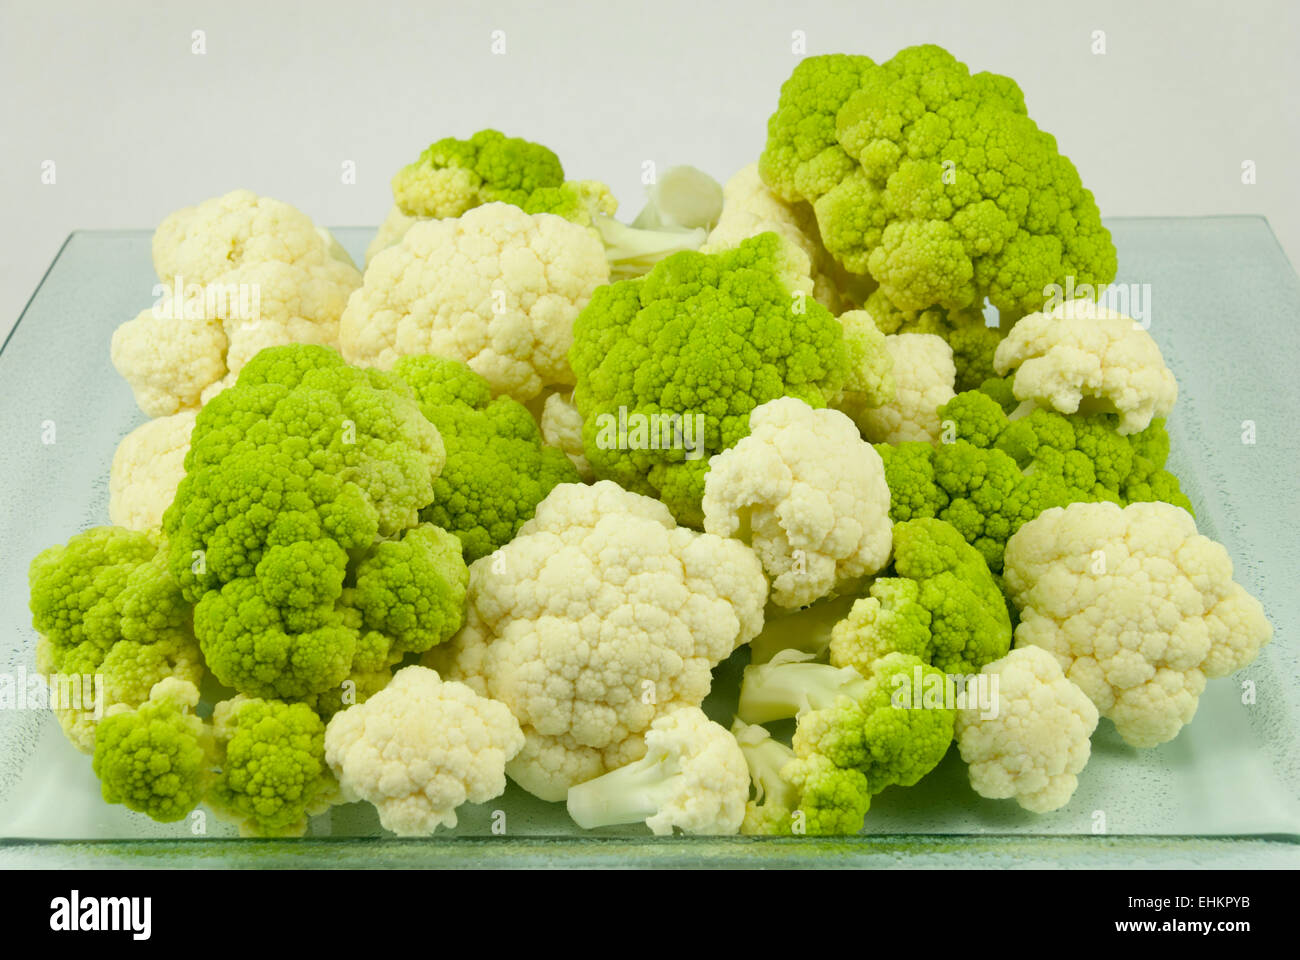 White Cauliflower and Green Broccoflower Stock Photo